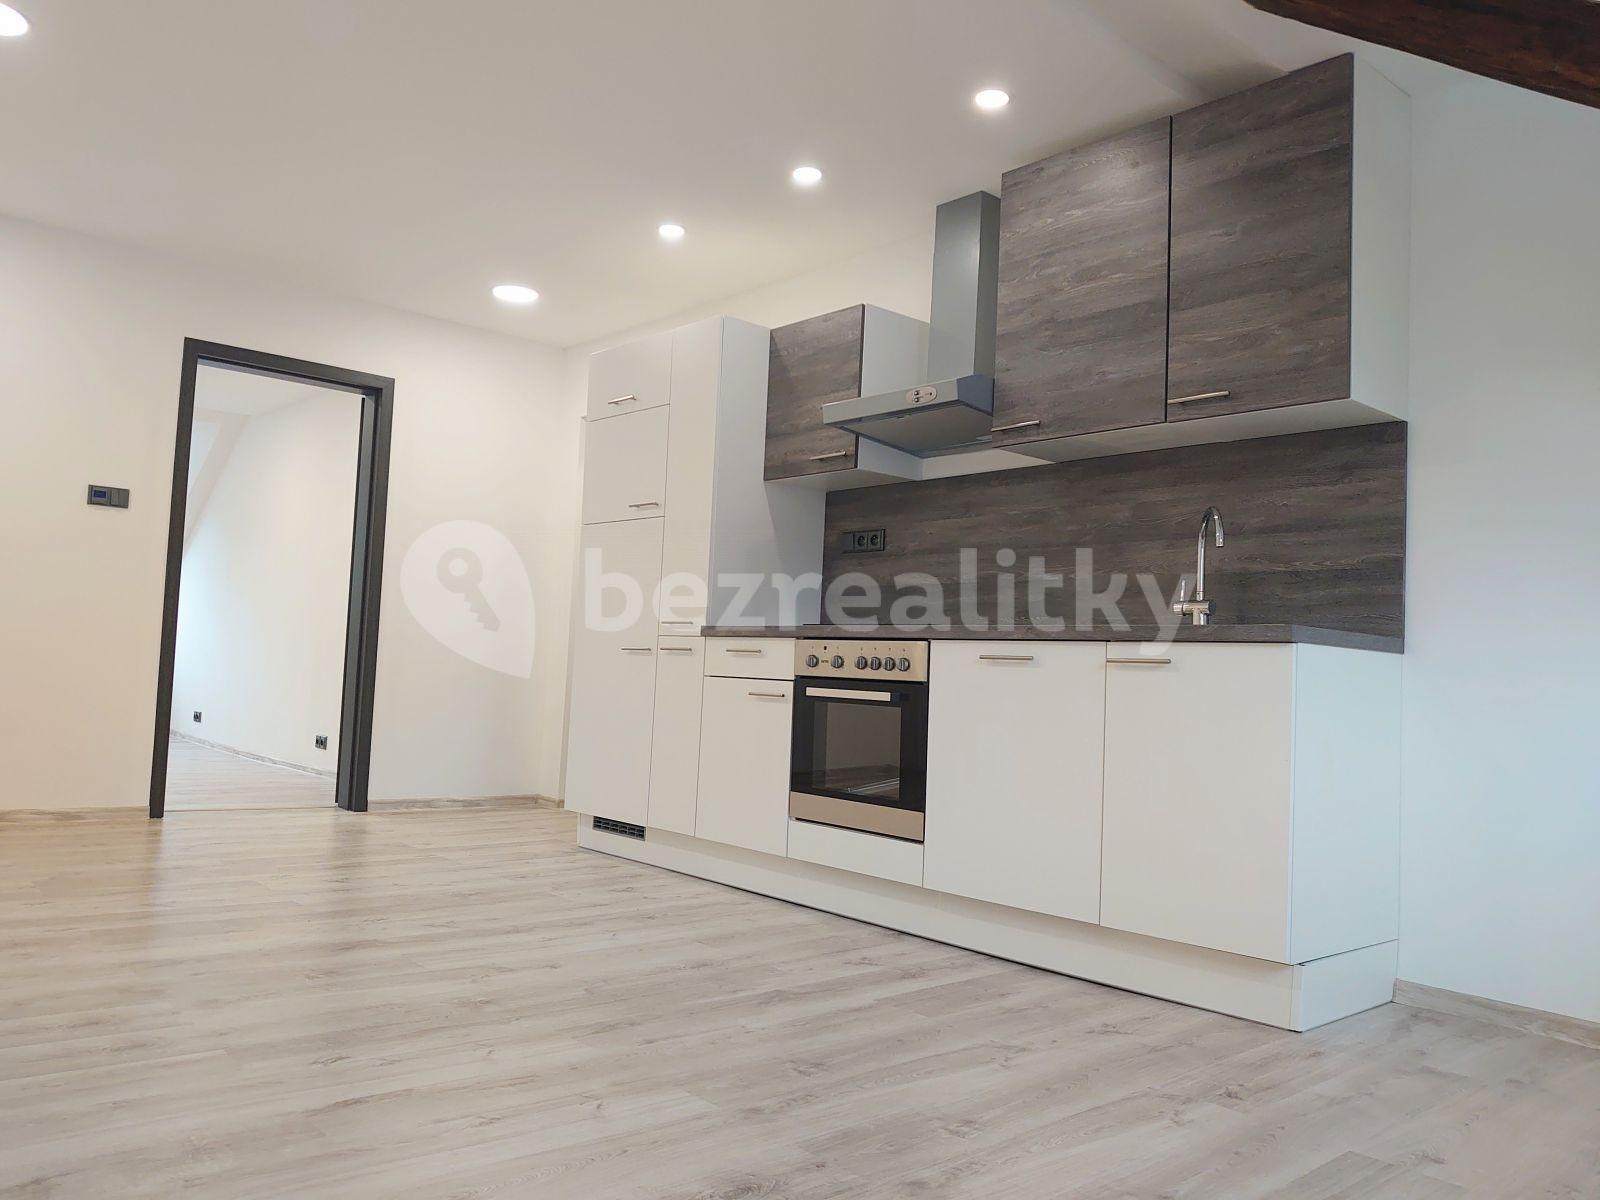 1 bedroom with open-plan kitchen flat to rent, 53 m², Nákladní, Karlovy Vary, Karlovarský Region